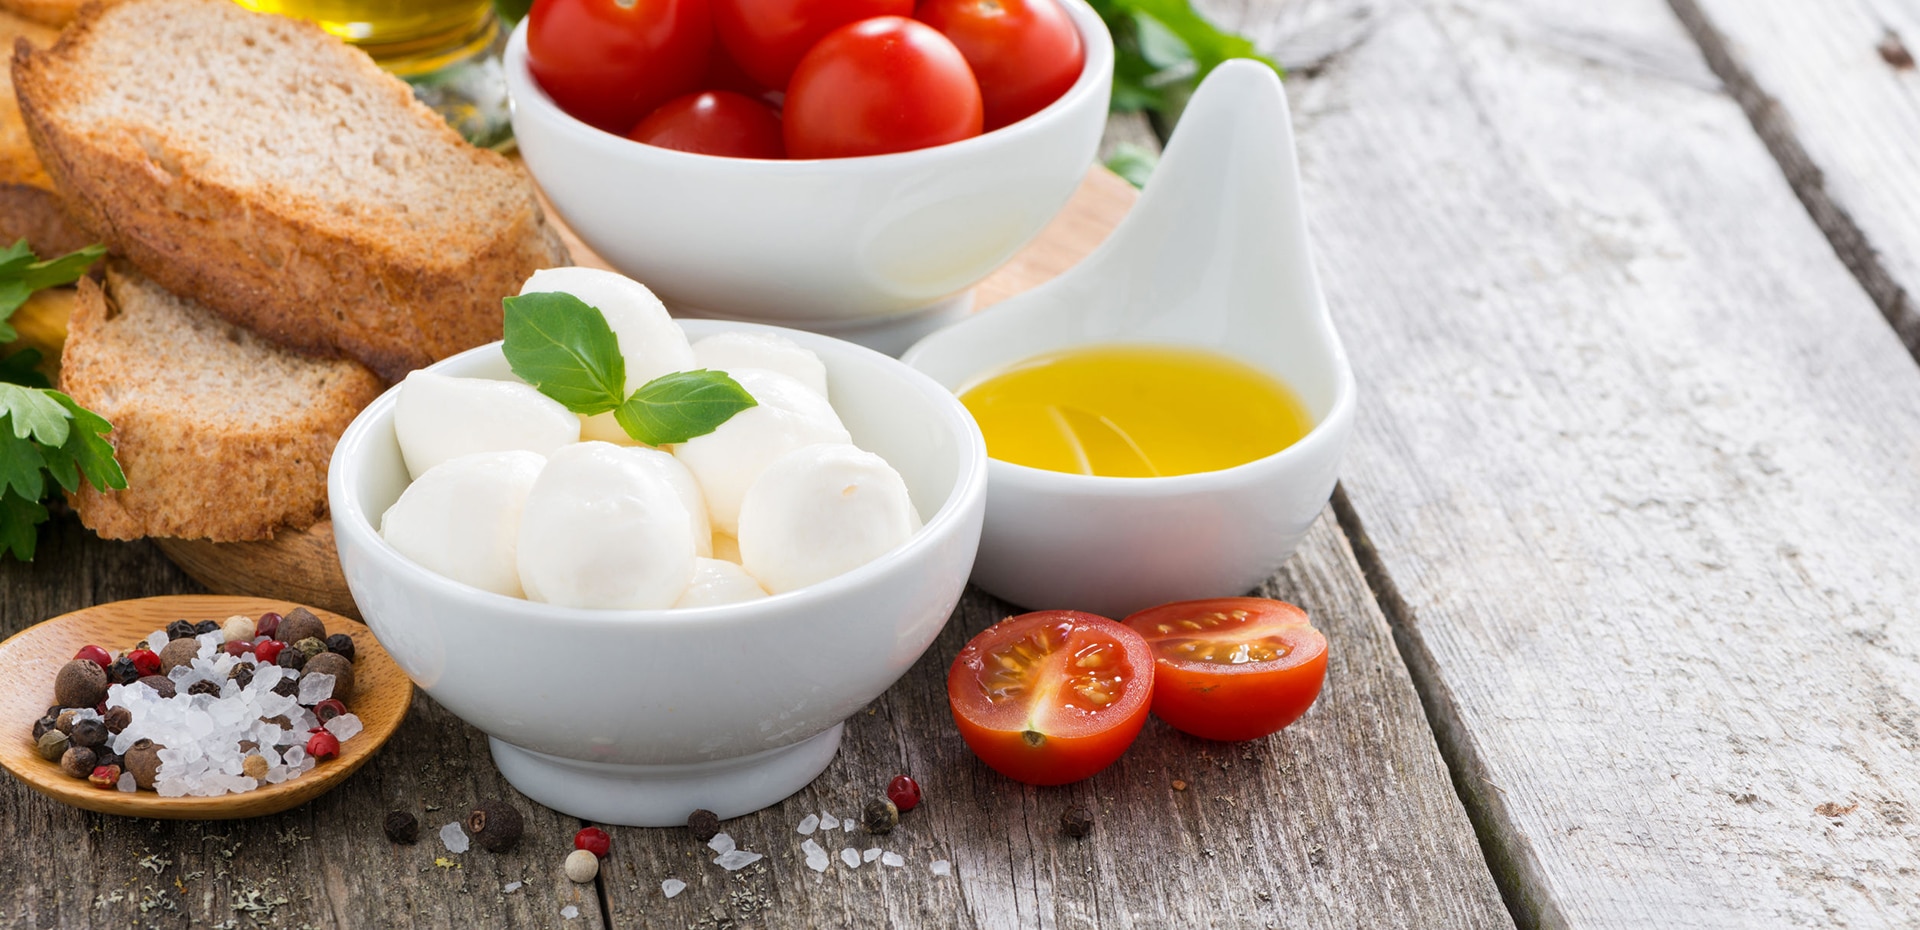 Mozzarella, tomat og olivenolje - vanlige ingredienser i middelhavskost